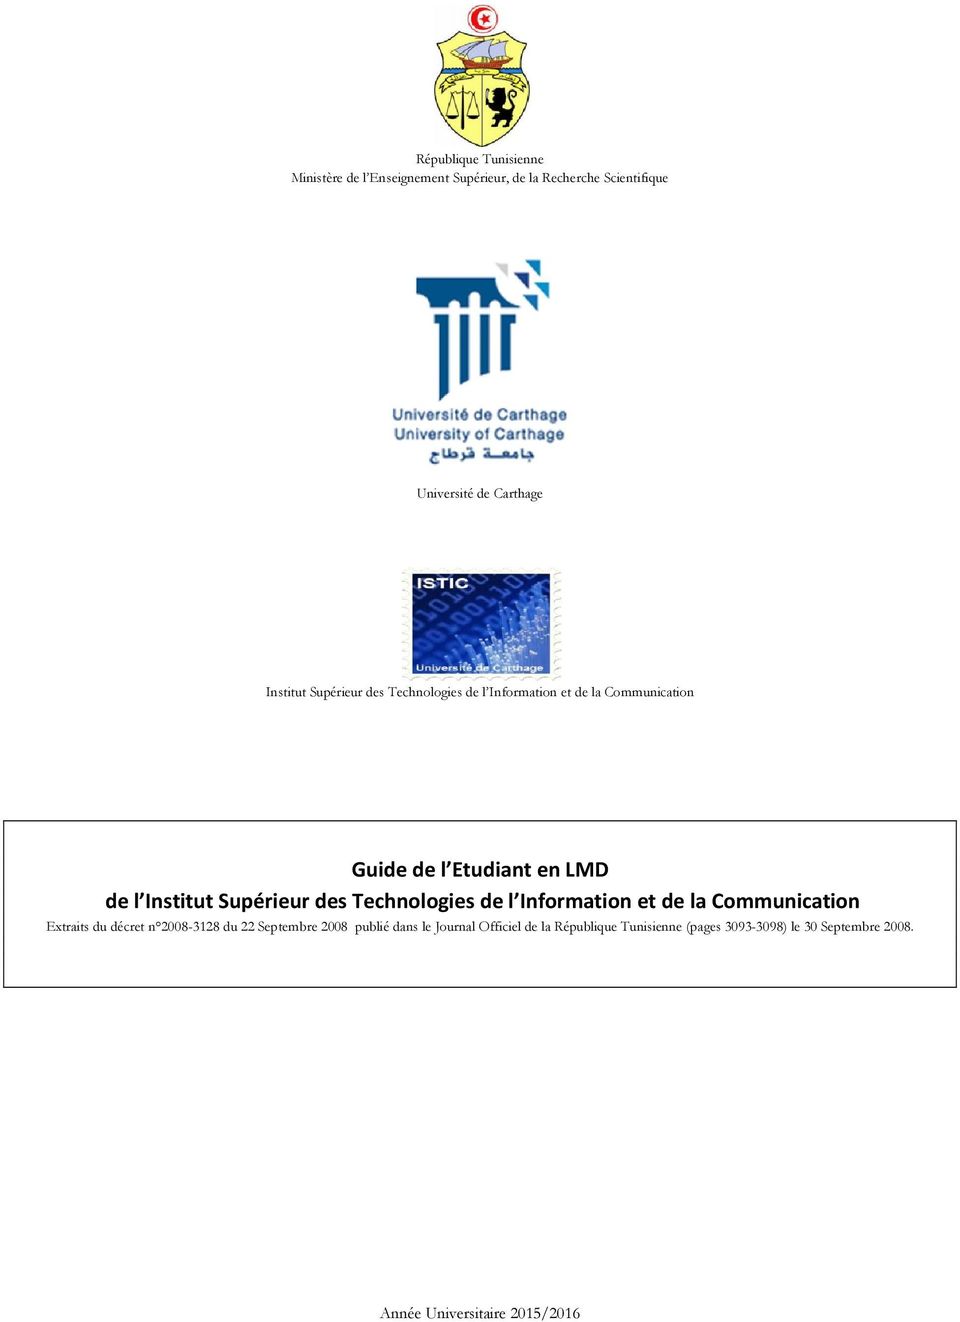 Supérieur des Technologies de l Information et de la Communication Extraits du décret n 2008-3128 du 22 Septembre 2008